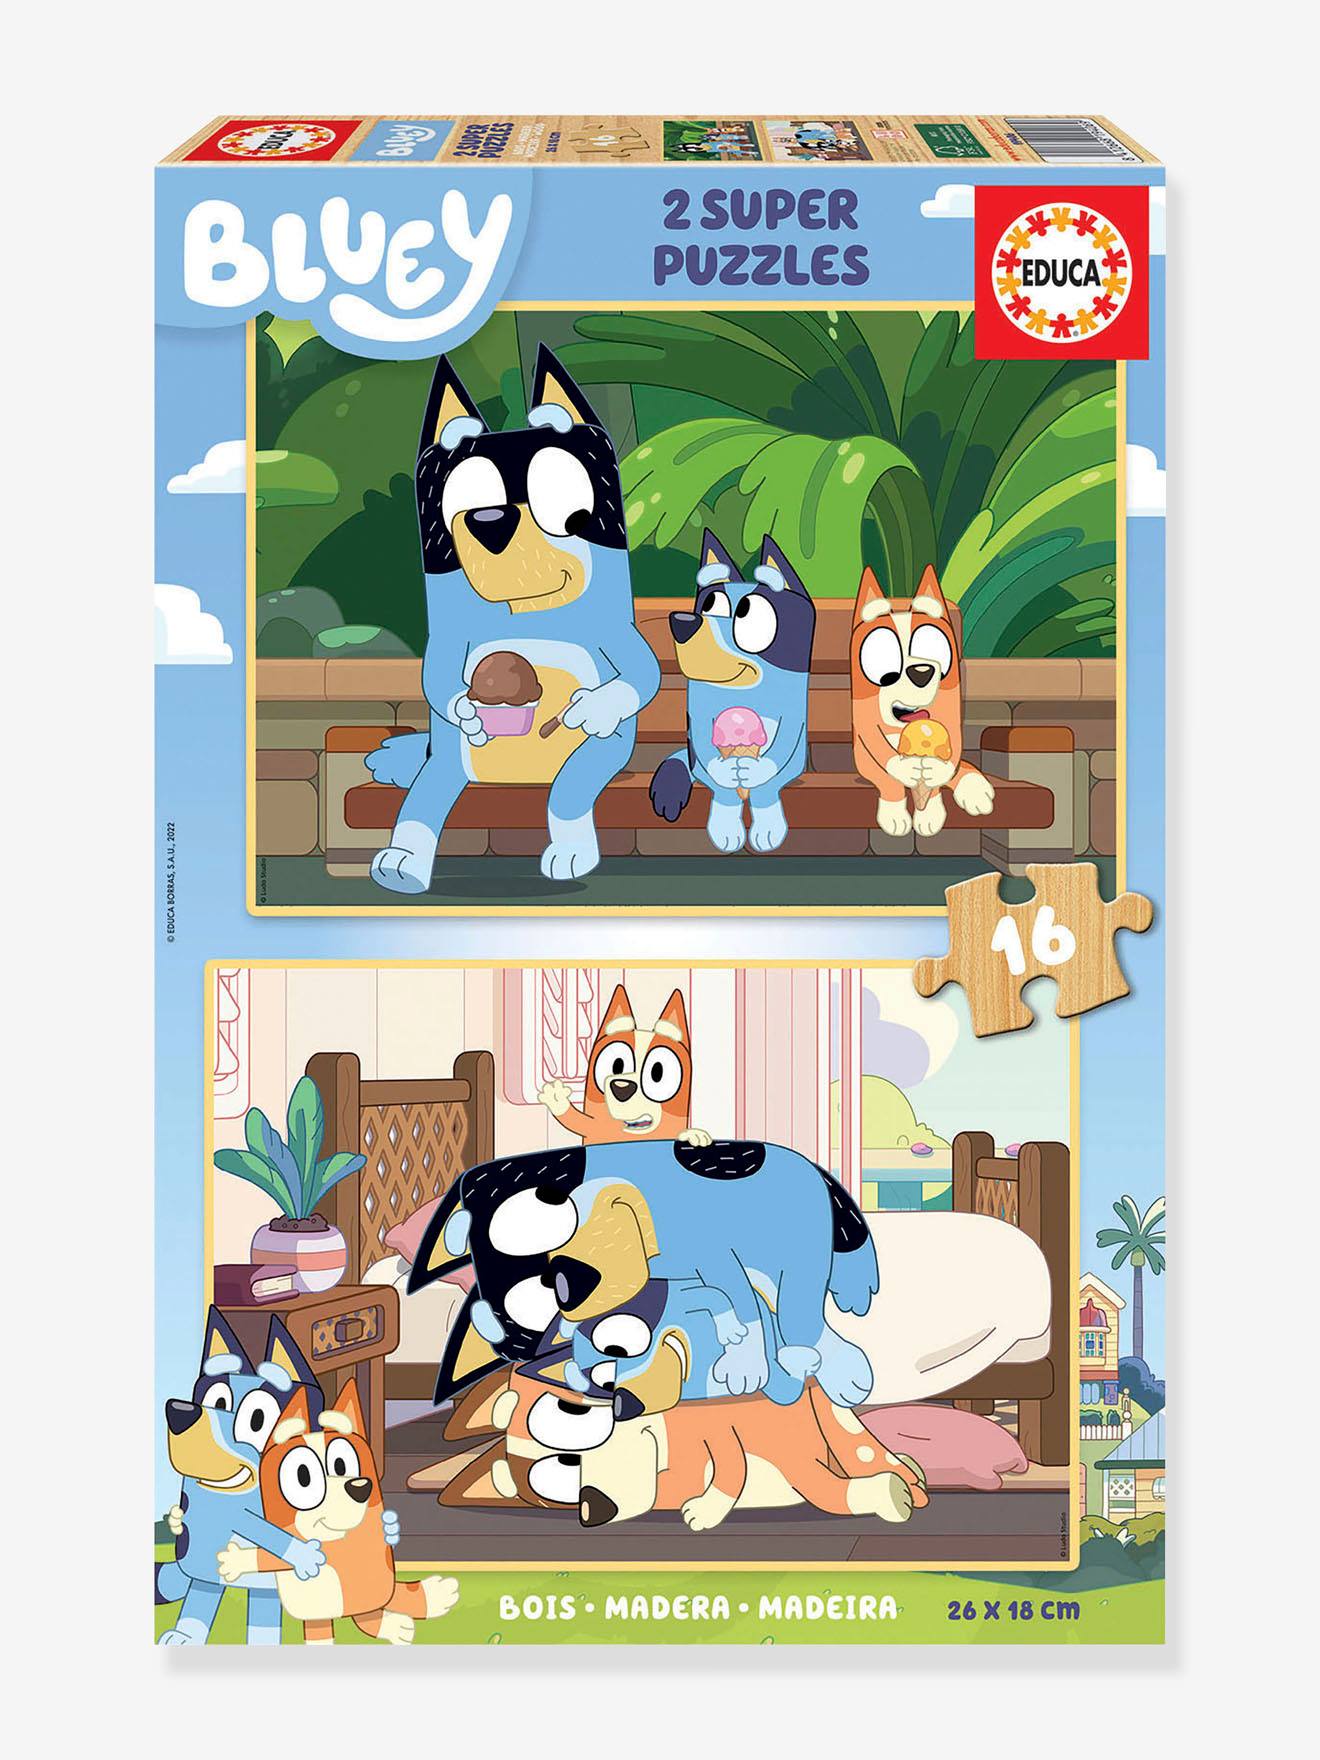 2 Super Puzzels 16 stukjes hout - Bluey - EDUCA blauw